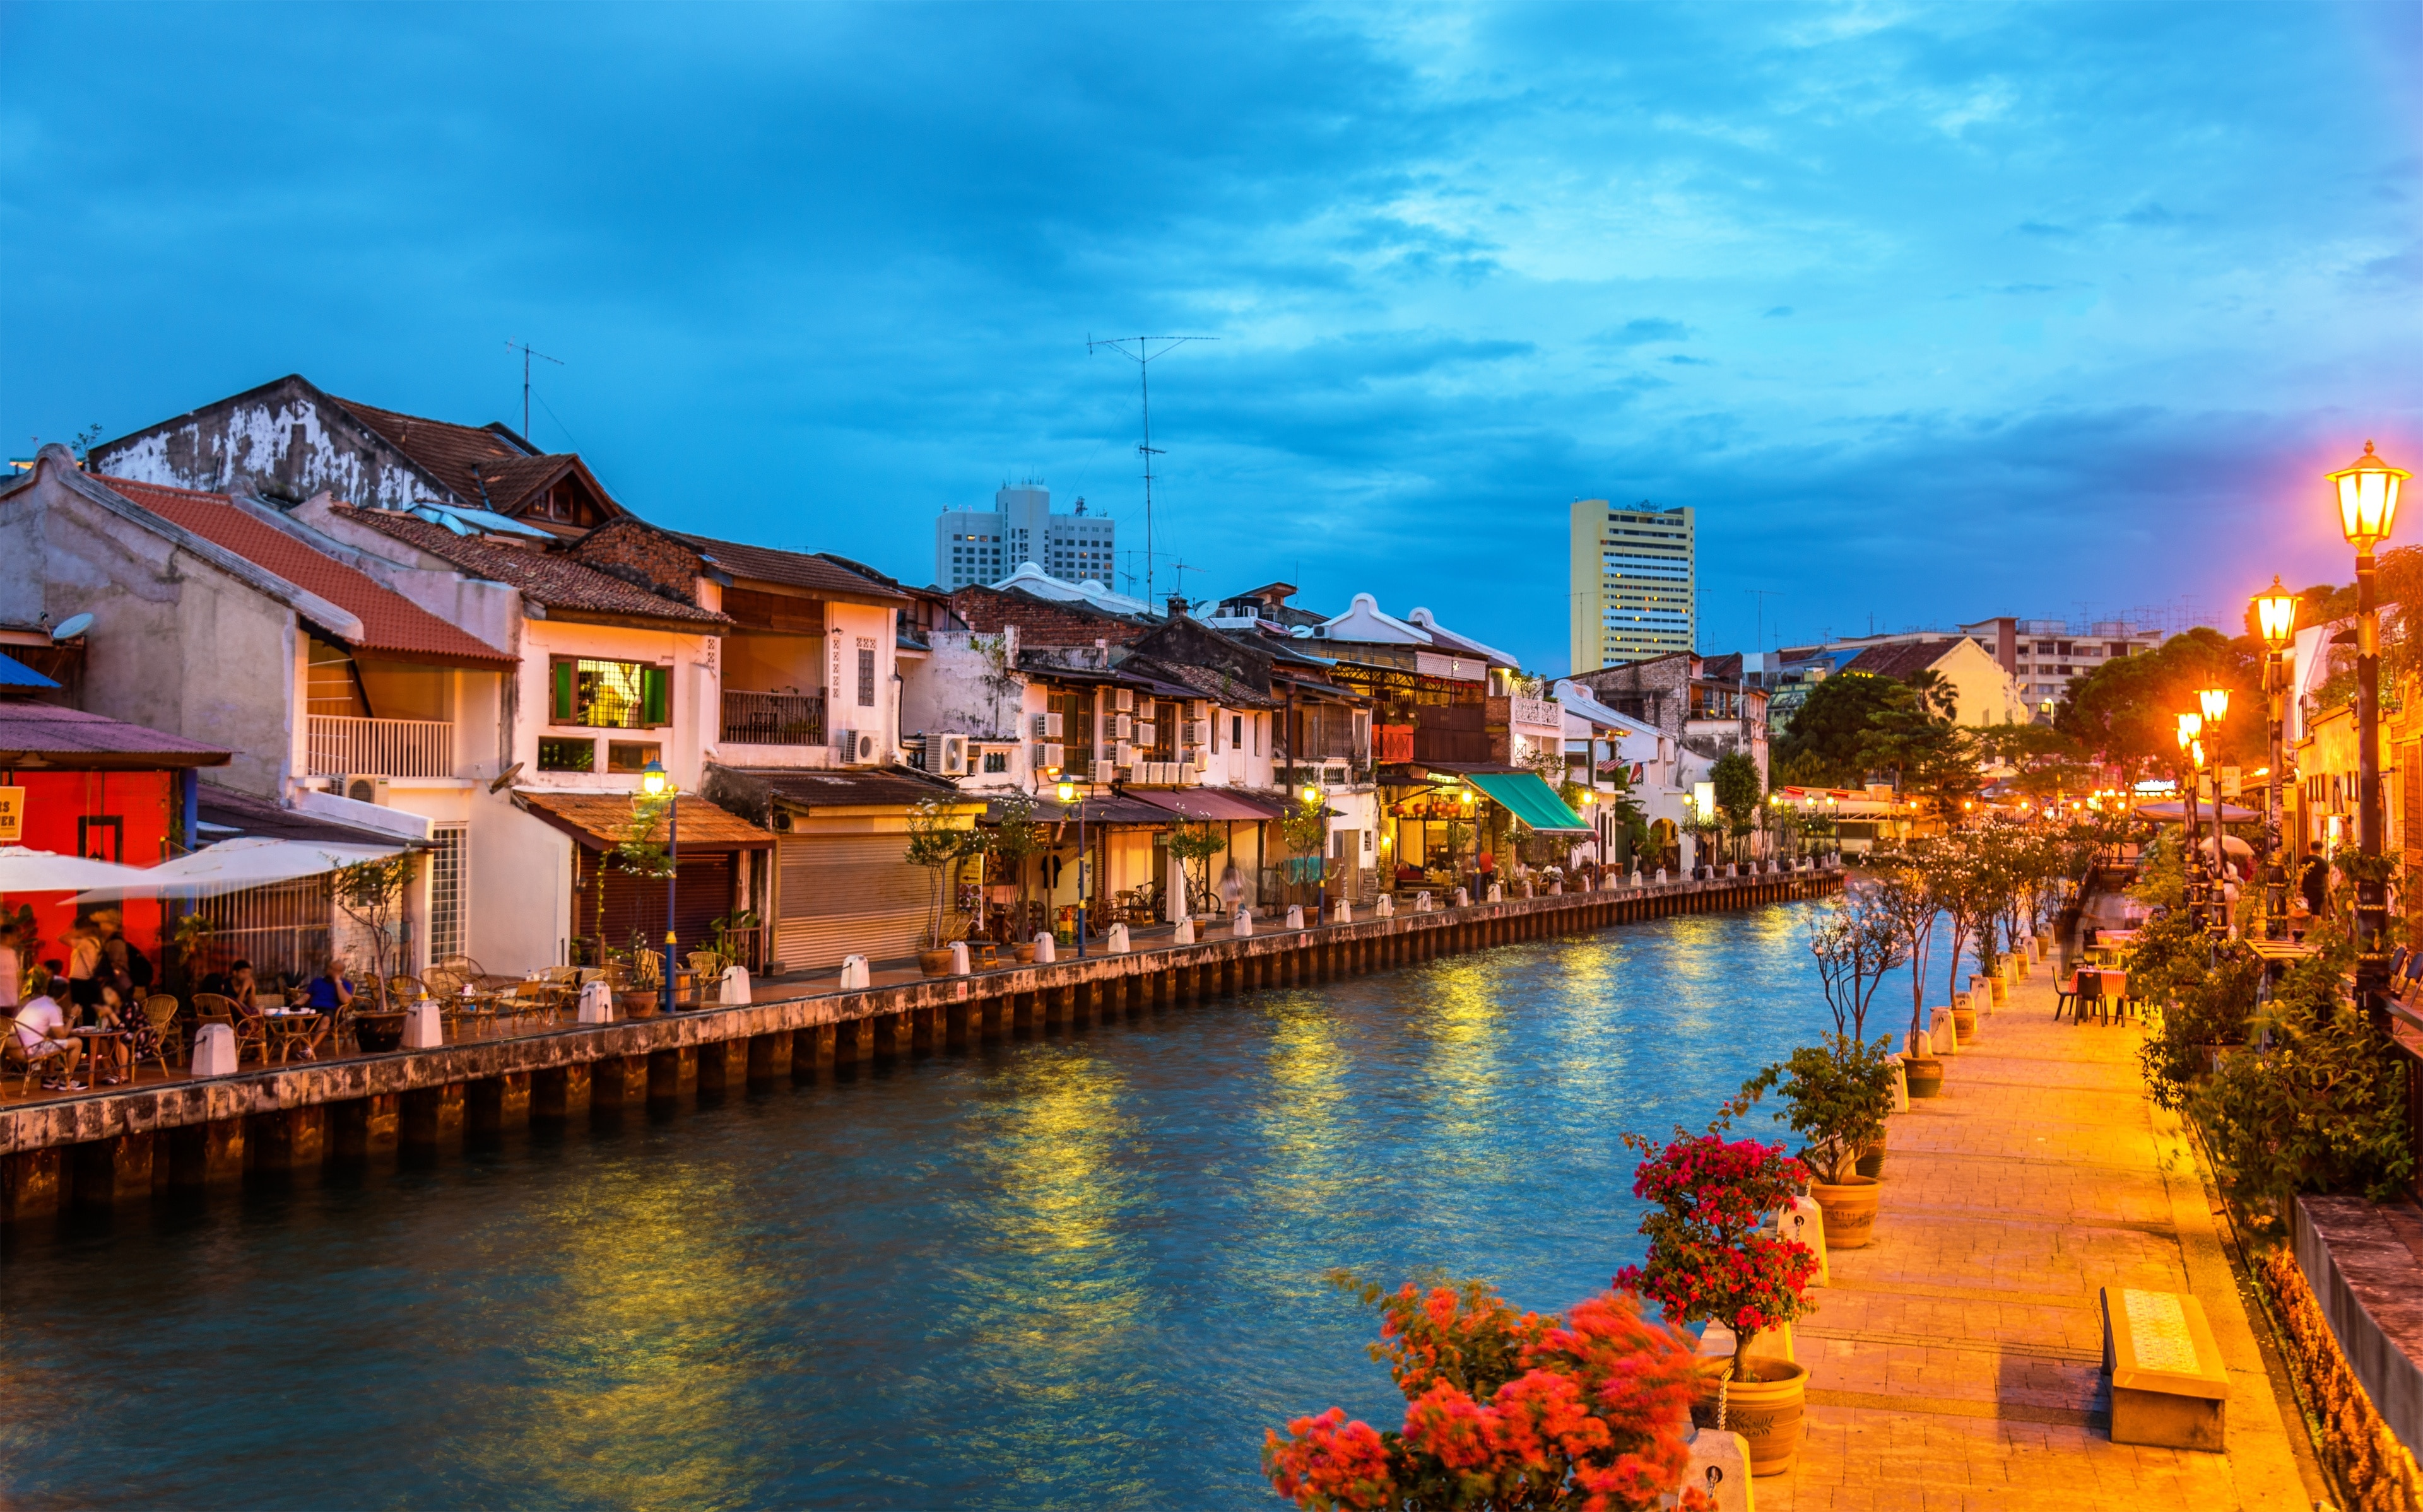 Du lịch Malacca: Tuyệt vời nhất tại Malacca 2023| Expedia.com.vn